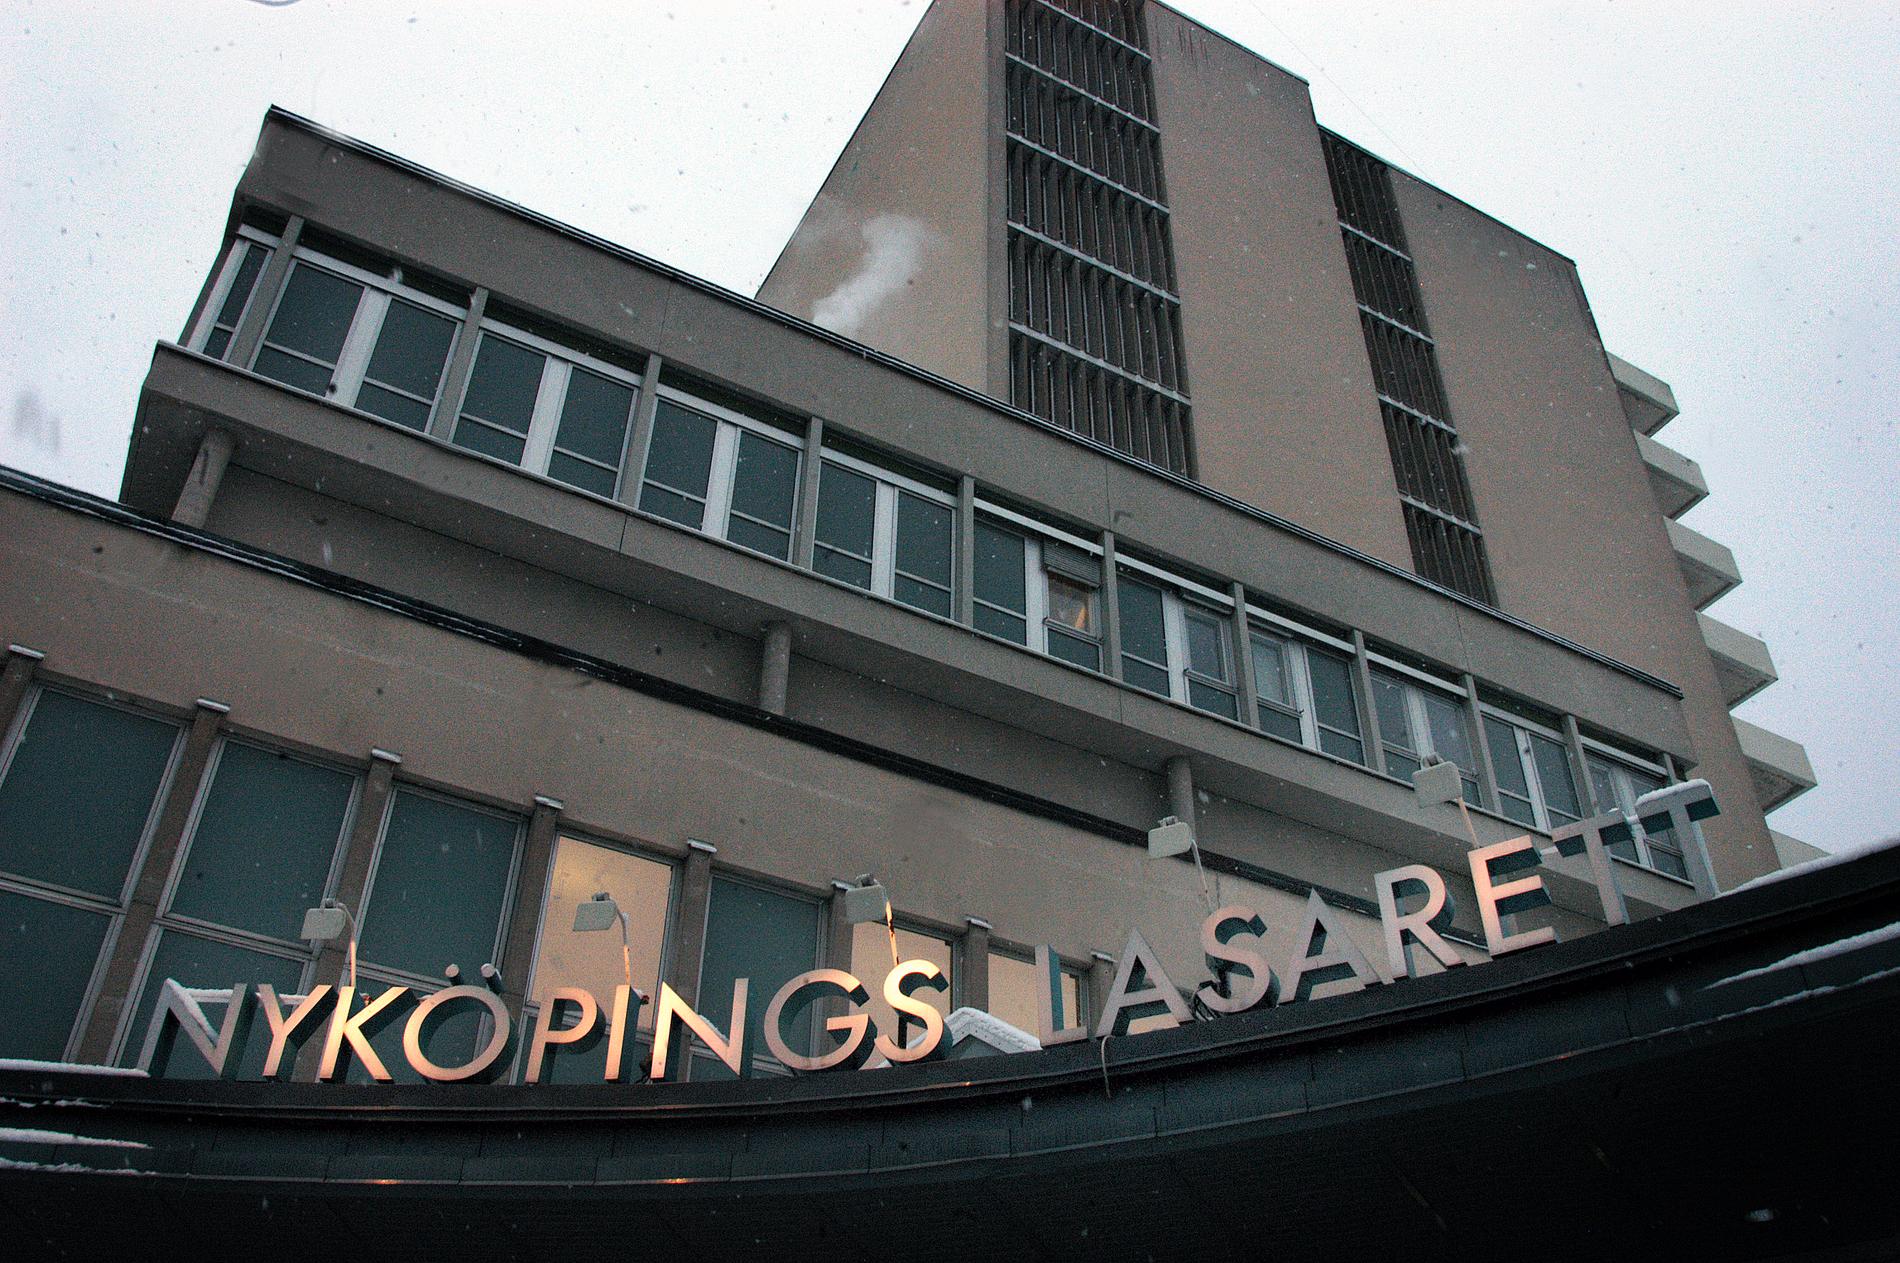 Ett utbrott av VRE-smitta på Nyköpings lasarett anmäls. Arkivbild.